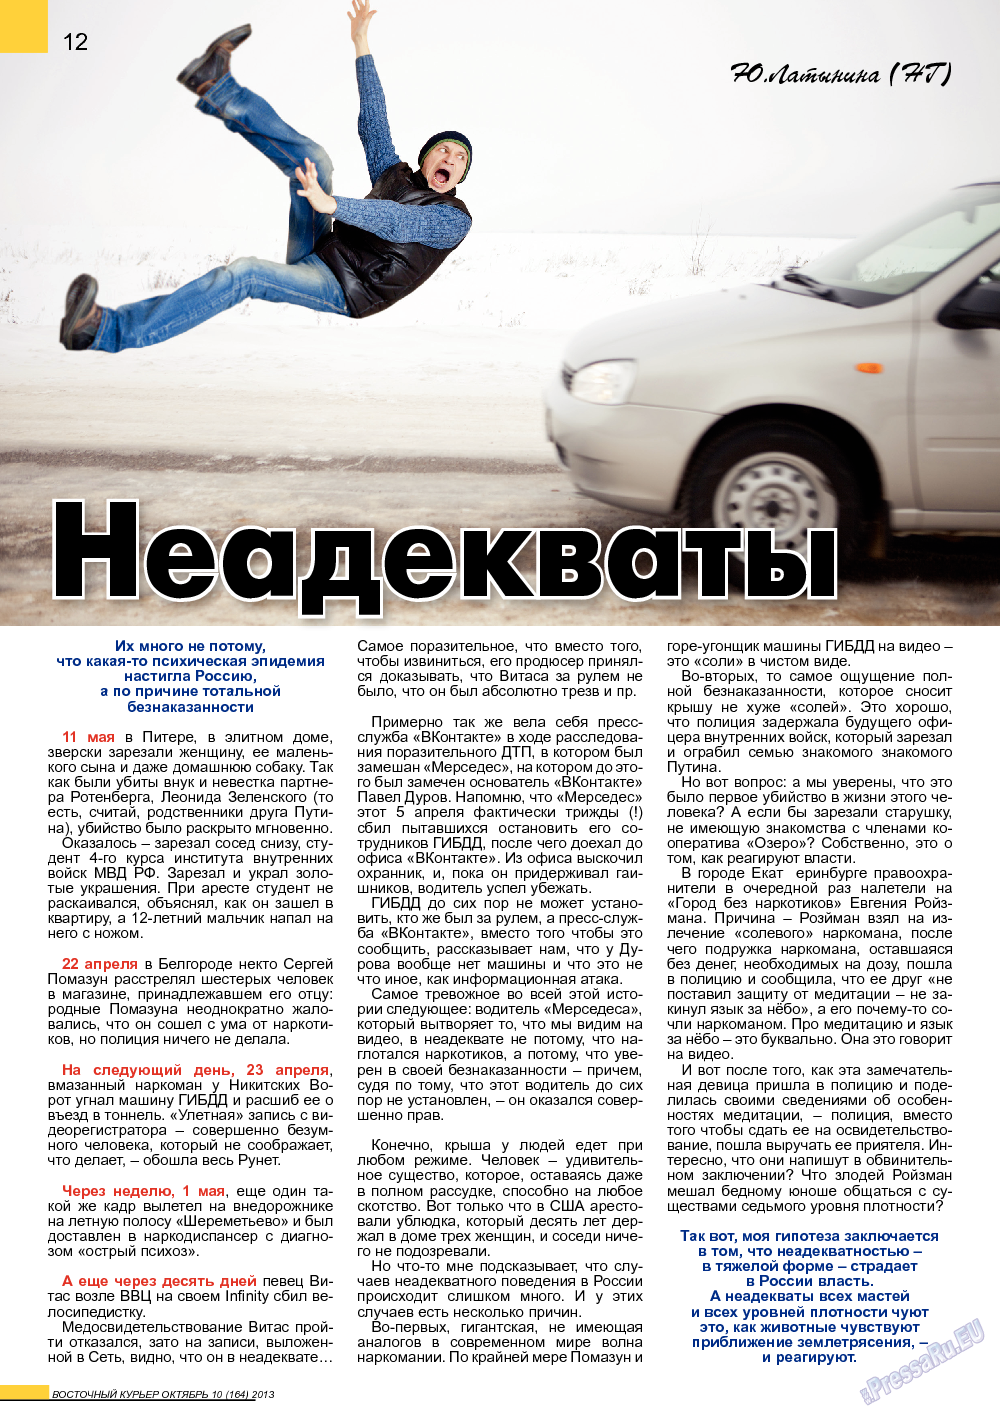 Восточный курьер (журнал). 2013 год, номер 10, стр. 12